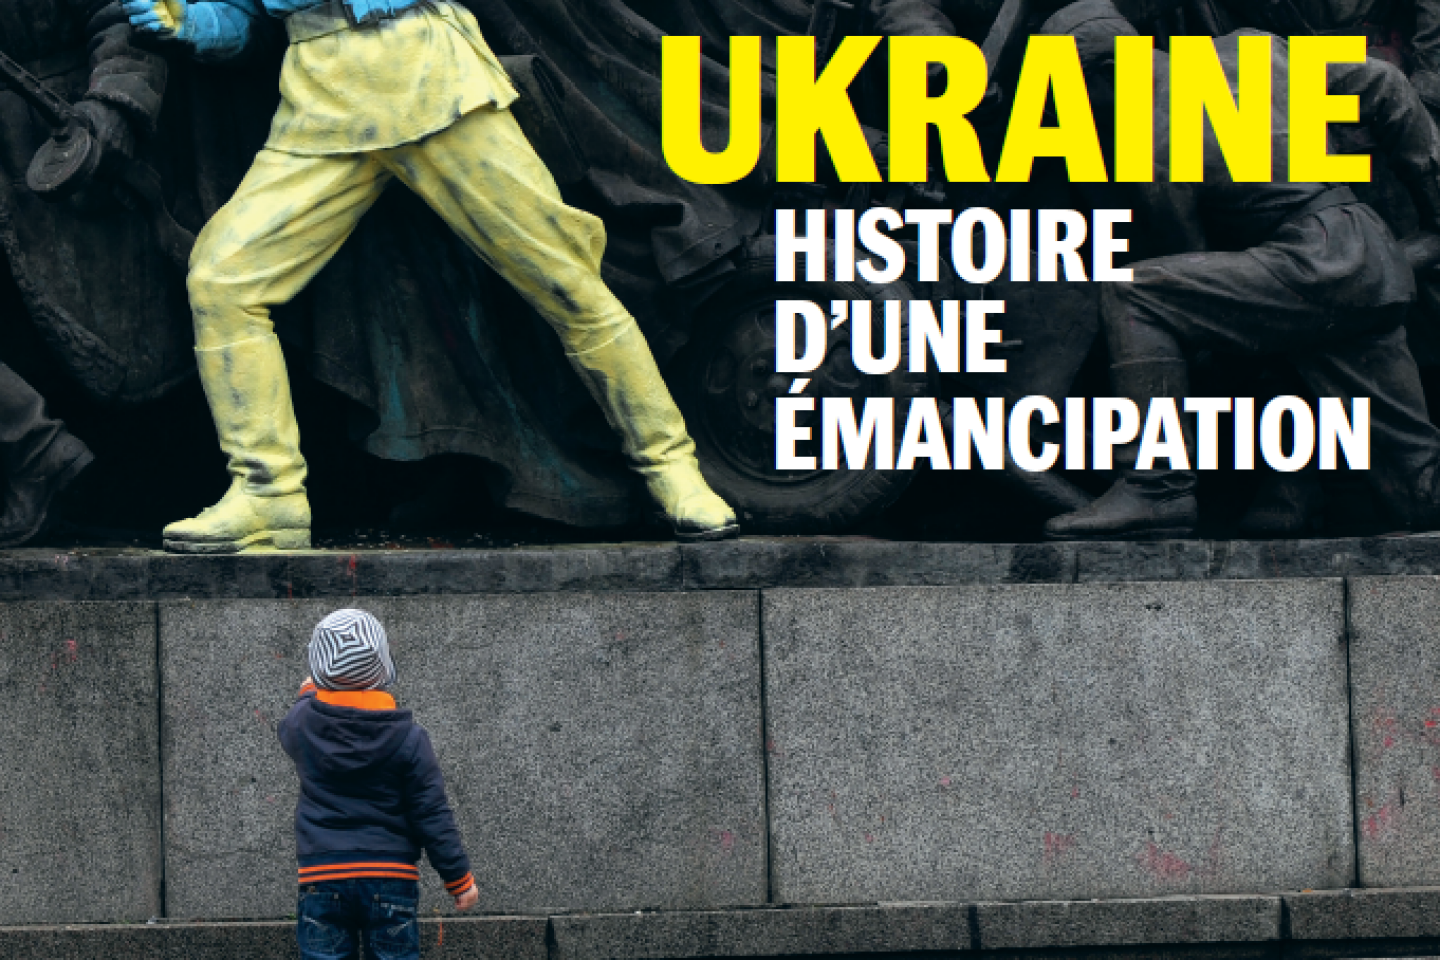 « Ukraine, histoire d’une émancipation », un hors-série du « Monde » sur une longue déchirure avec la Russie